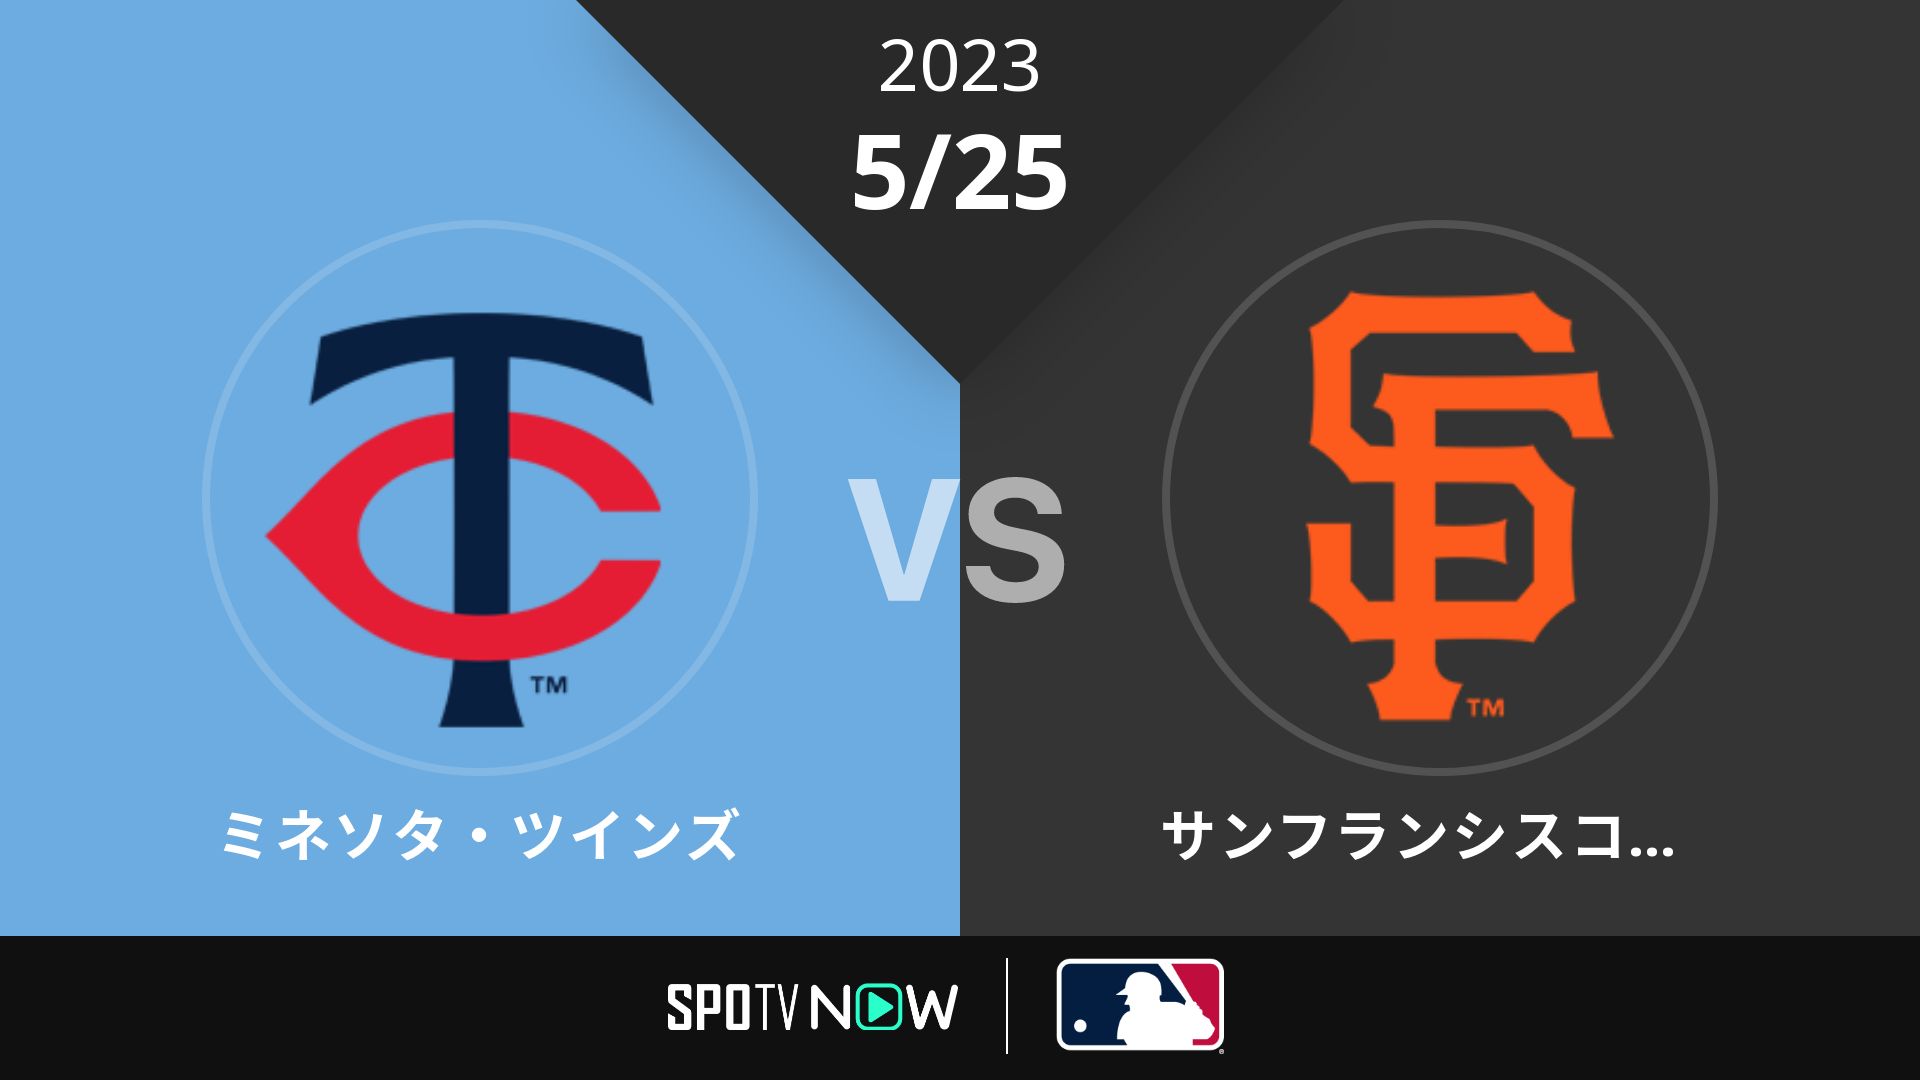 2023/5/25 ツインズ vs ジャイアンツ [MLB]